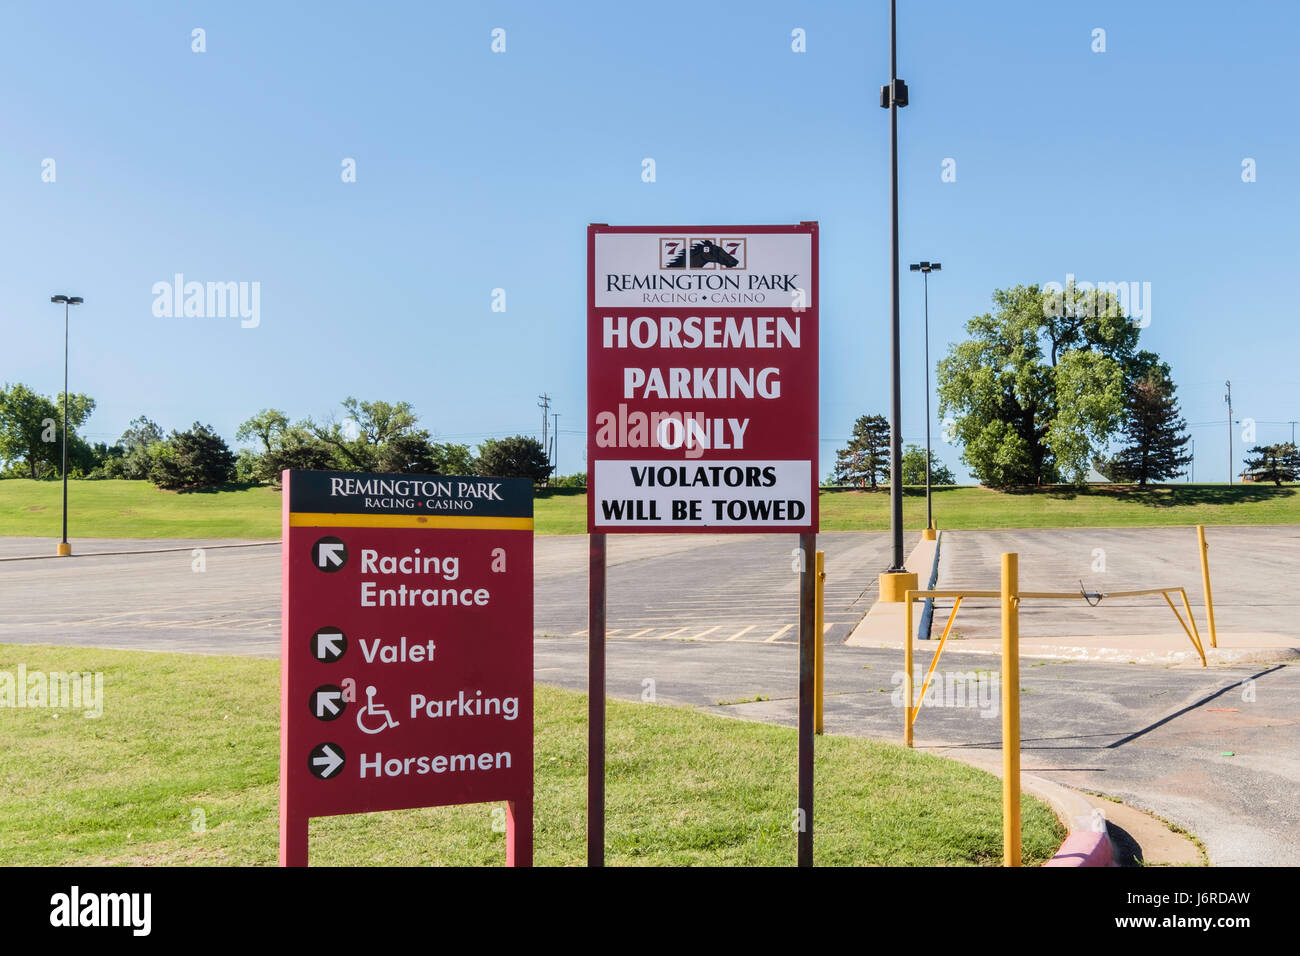 Remington Park, un cavallo struttura racing. Segni raffiguranti parcheggio,l'ingresso,Cavalieri solo parcheggio. Oklahoma City, Oklahoma, Stati Uniti d'America. Foto Stock